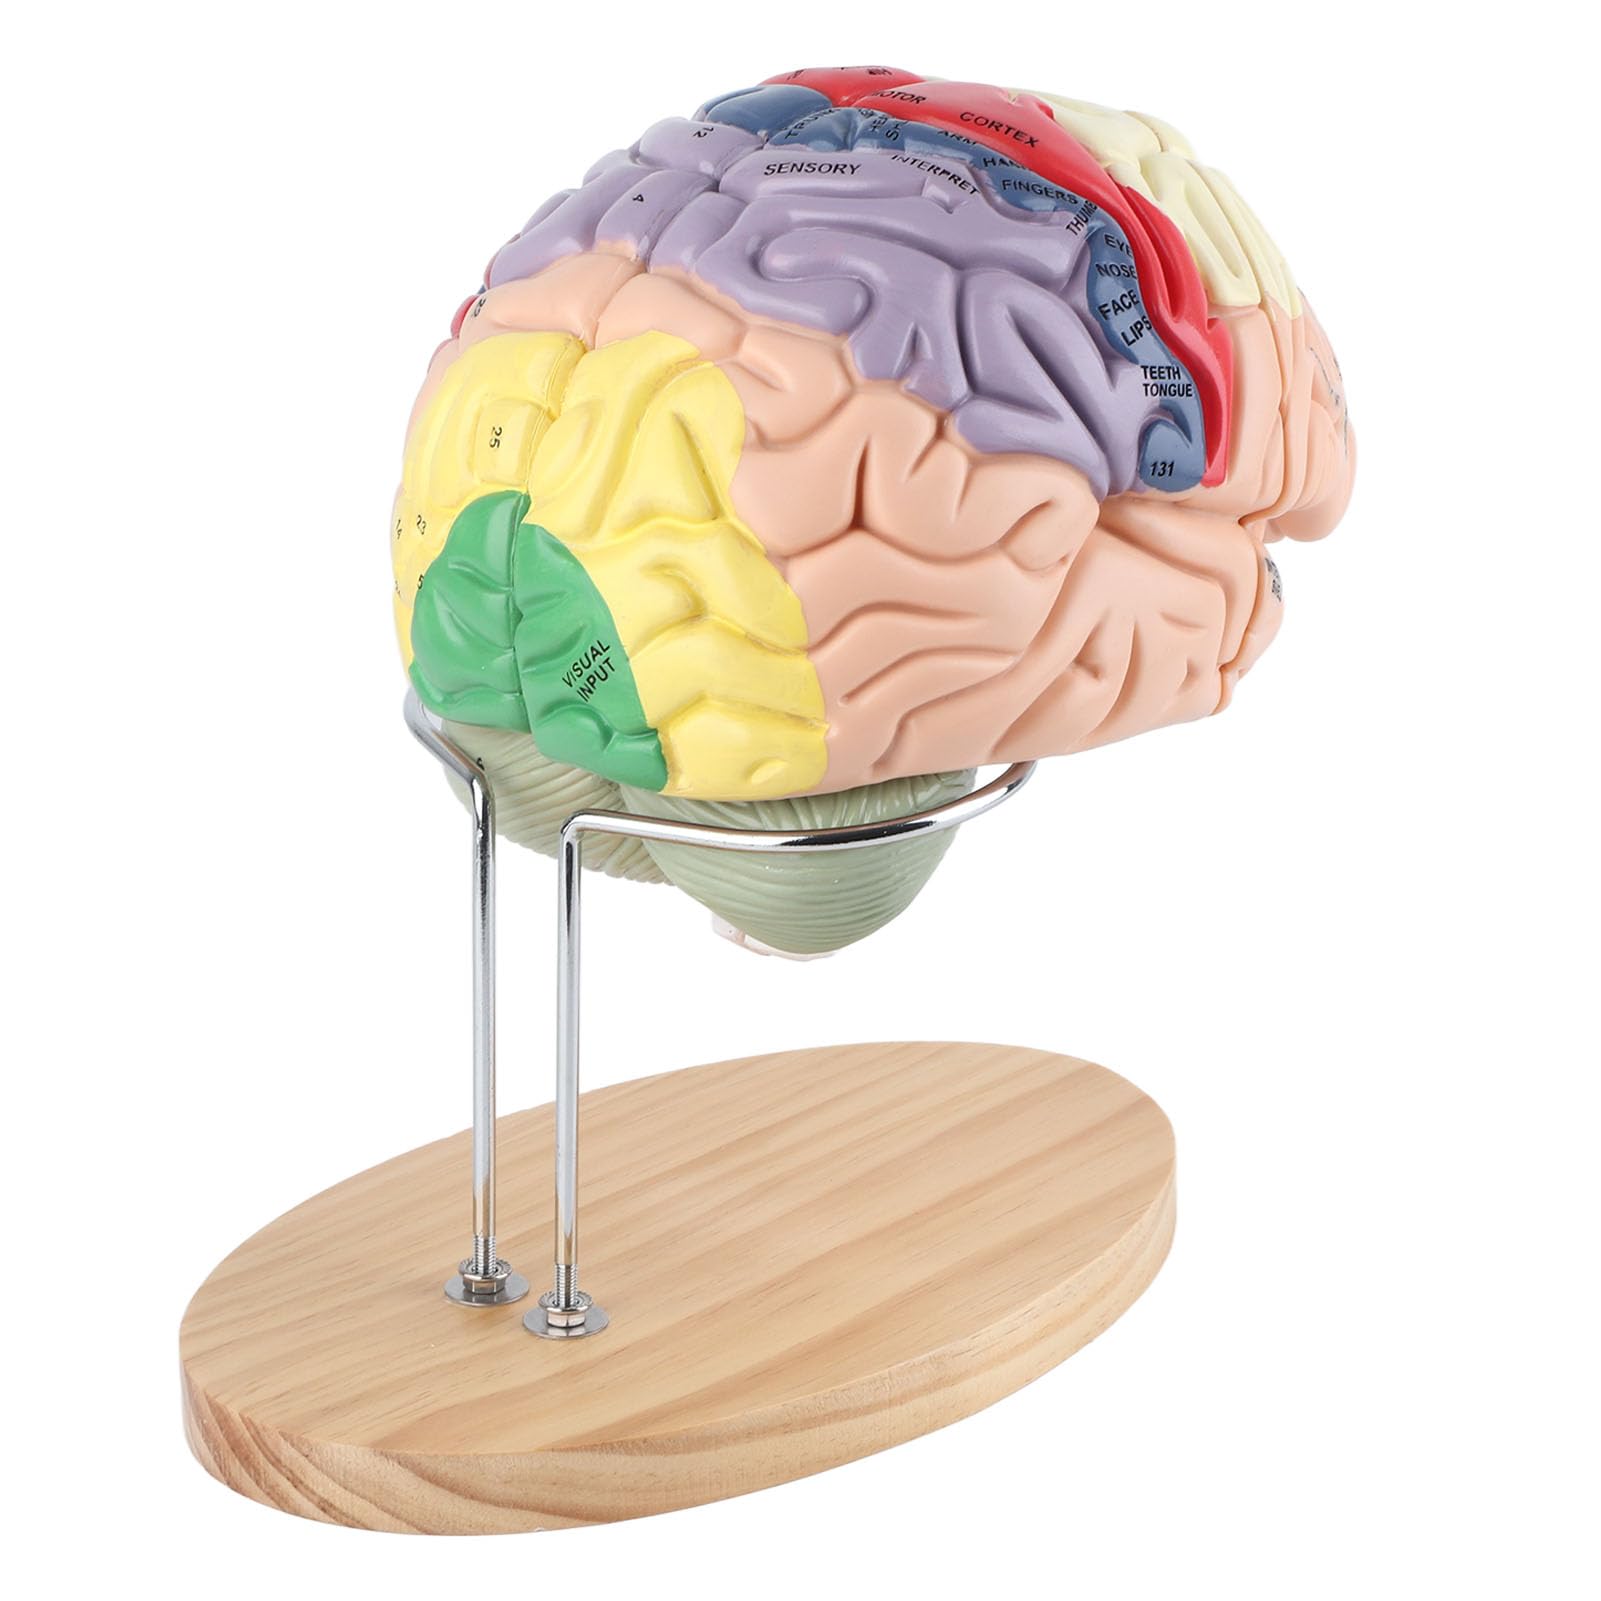 Oumefar Medizinisches Gehirn Anatomisches menschliches Gehirn Modell 4D Struktur des menschlichen Gehirns Hirnrinde 4 Teile Anatomie Medizinisches Lehren Lernwerkzeug